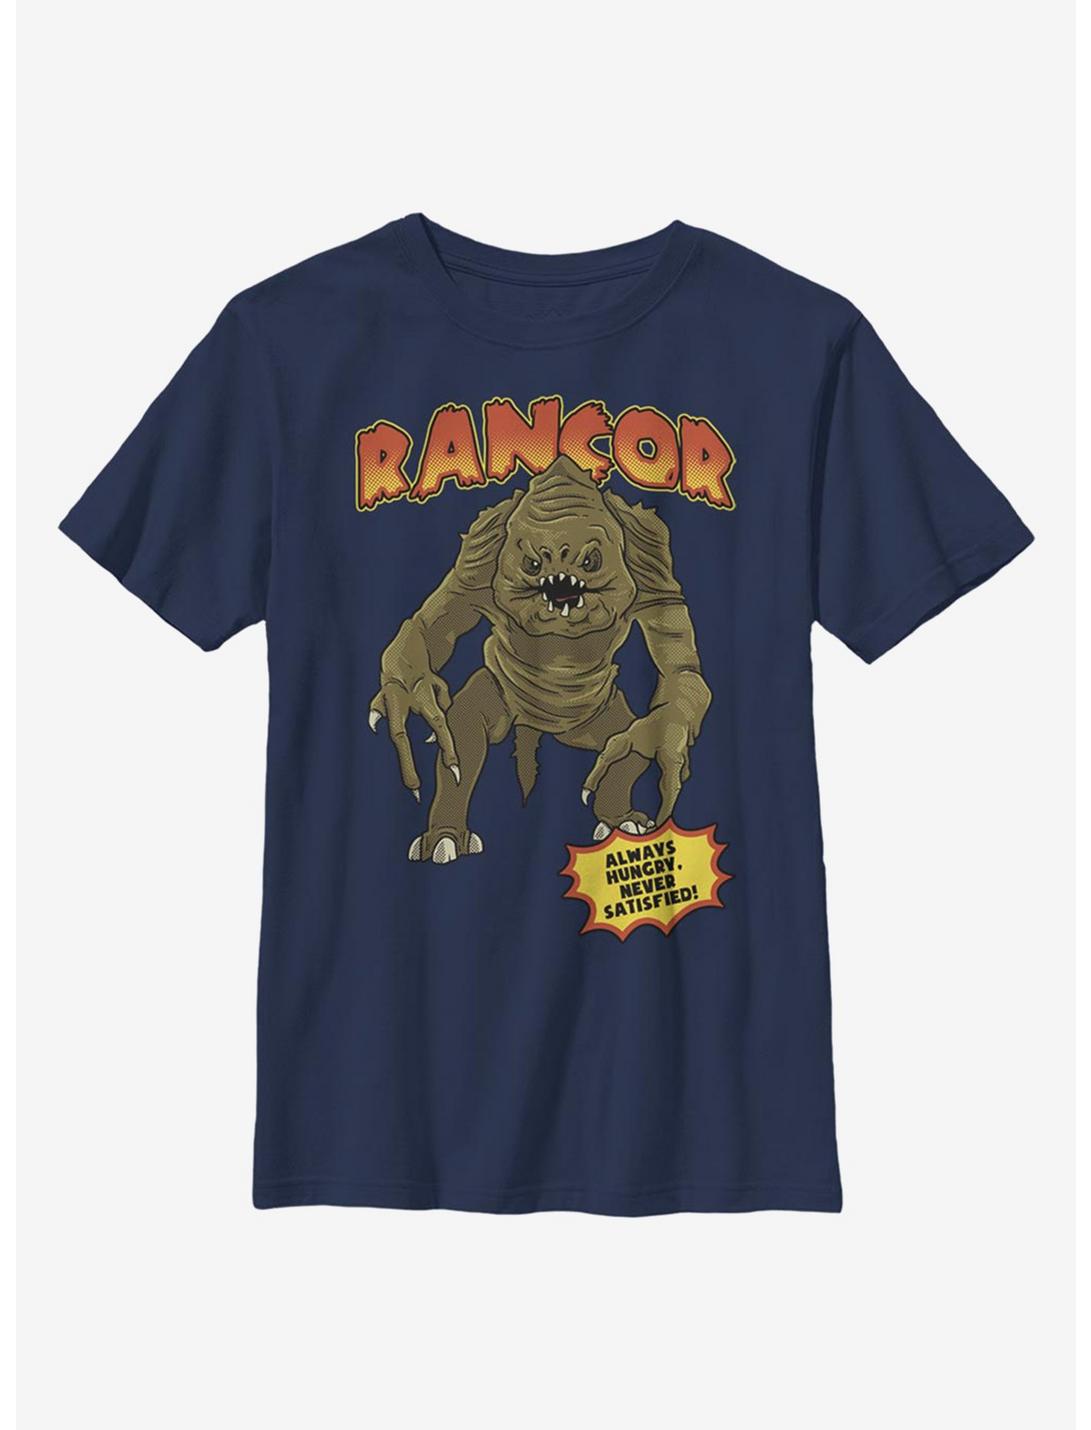 Star Wars Rancor Youth T-Shirt, NAVY, hi-res